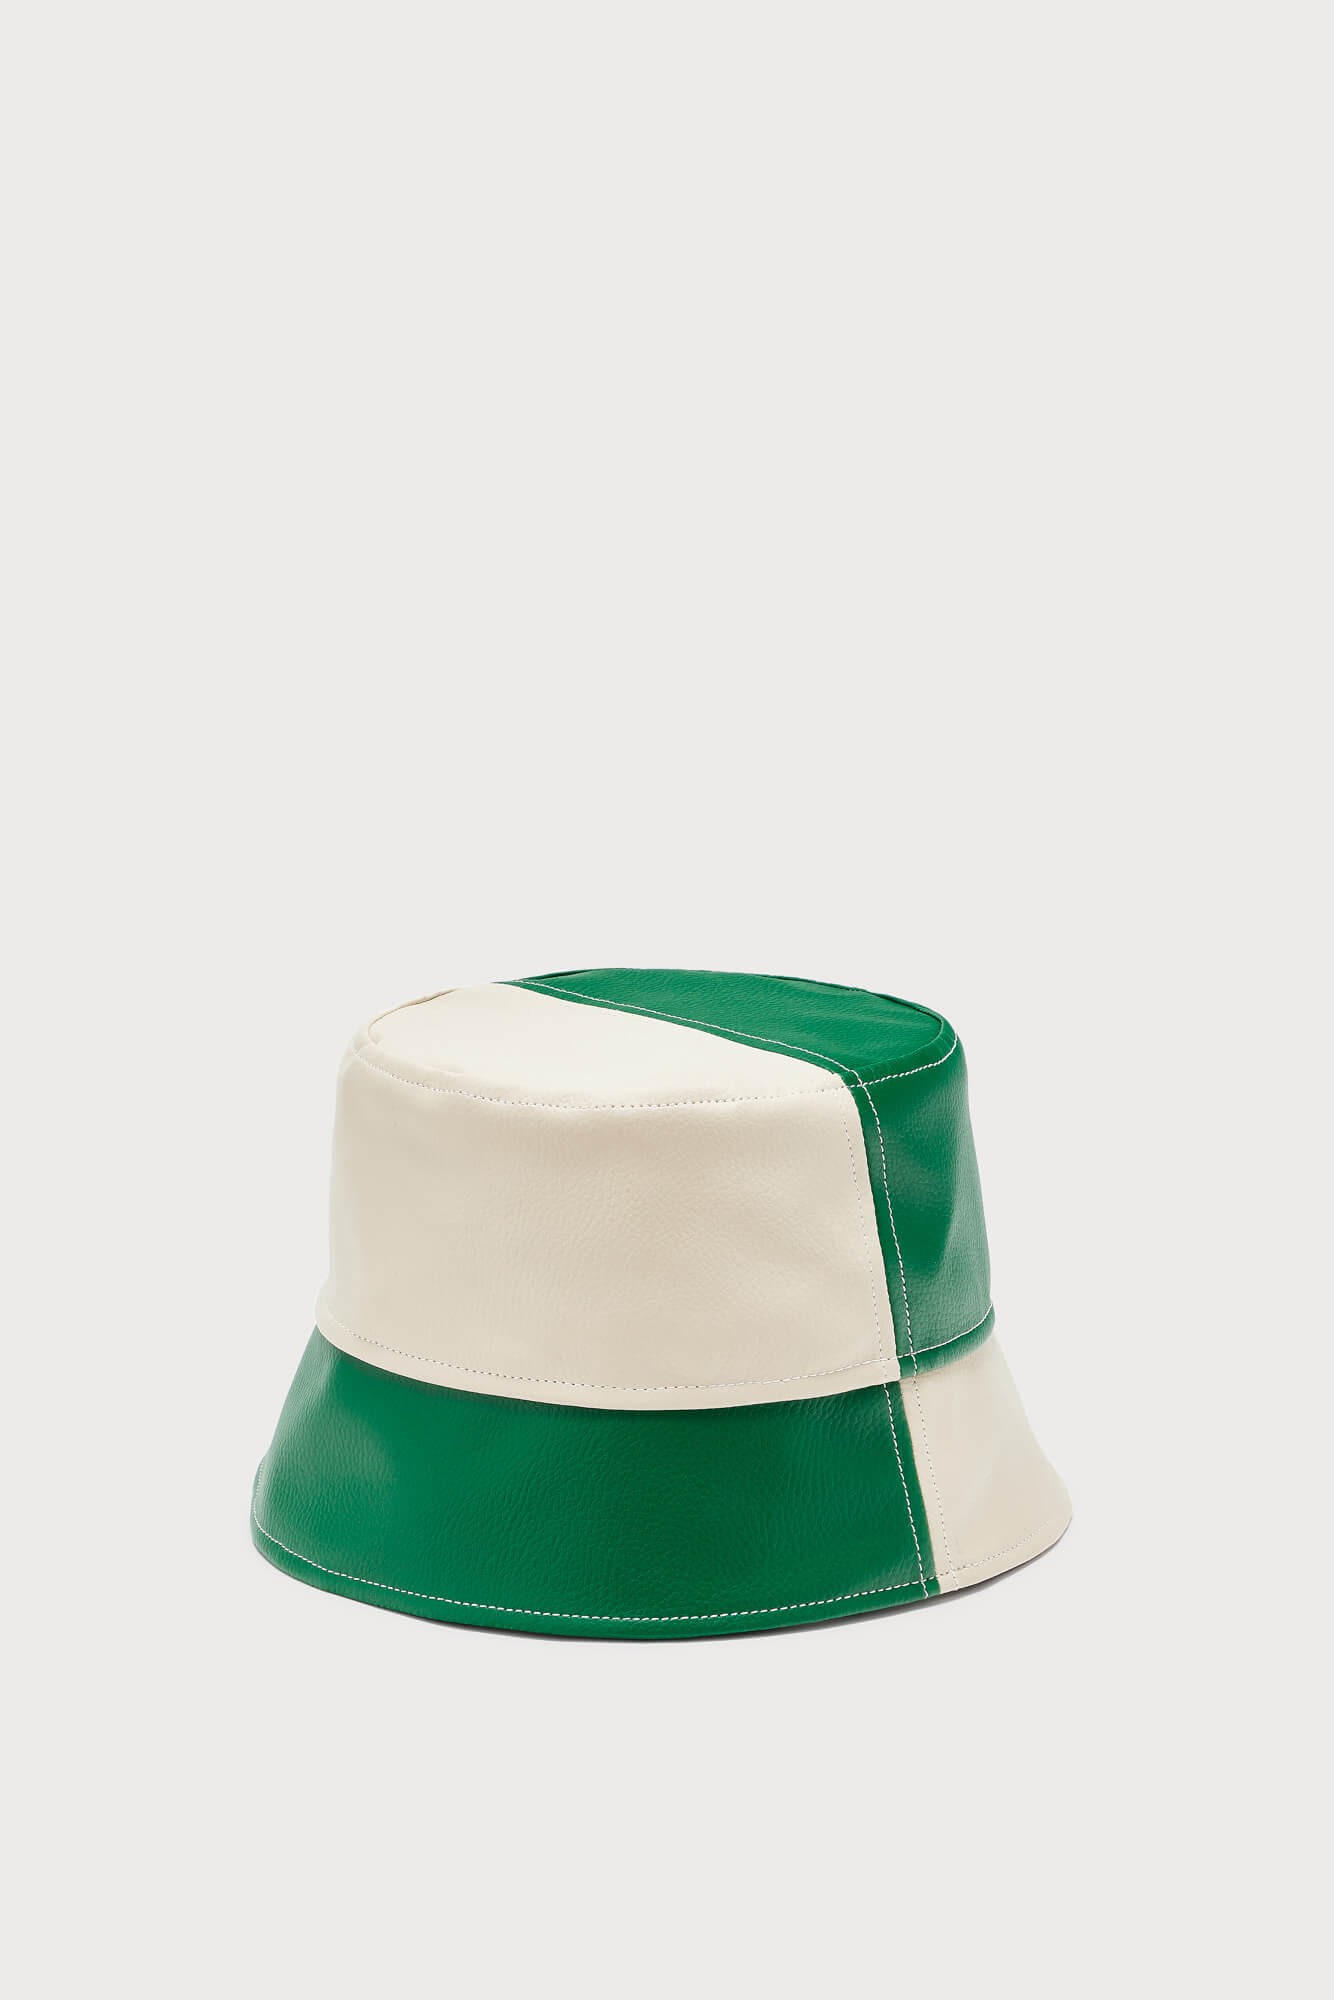 Bob Hat Green & Off-White